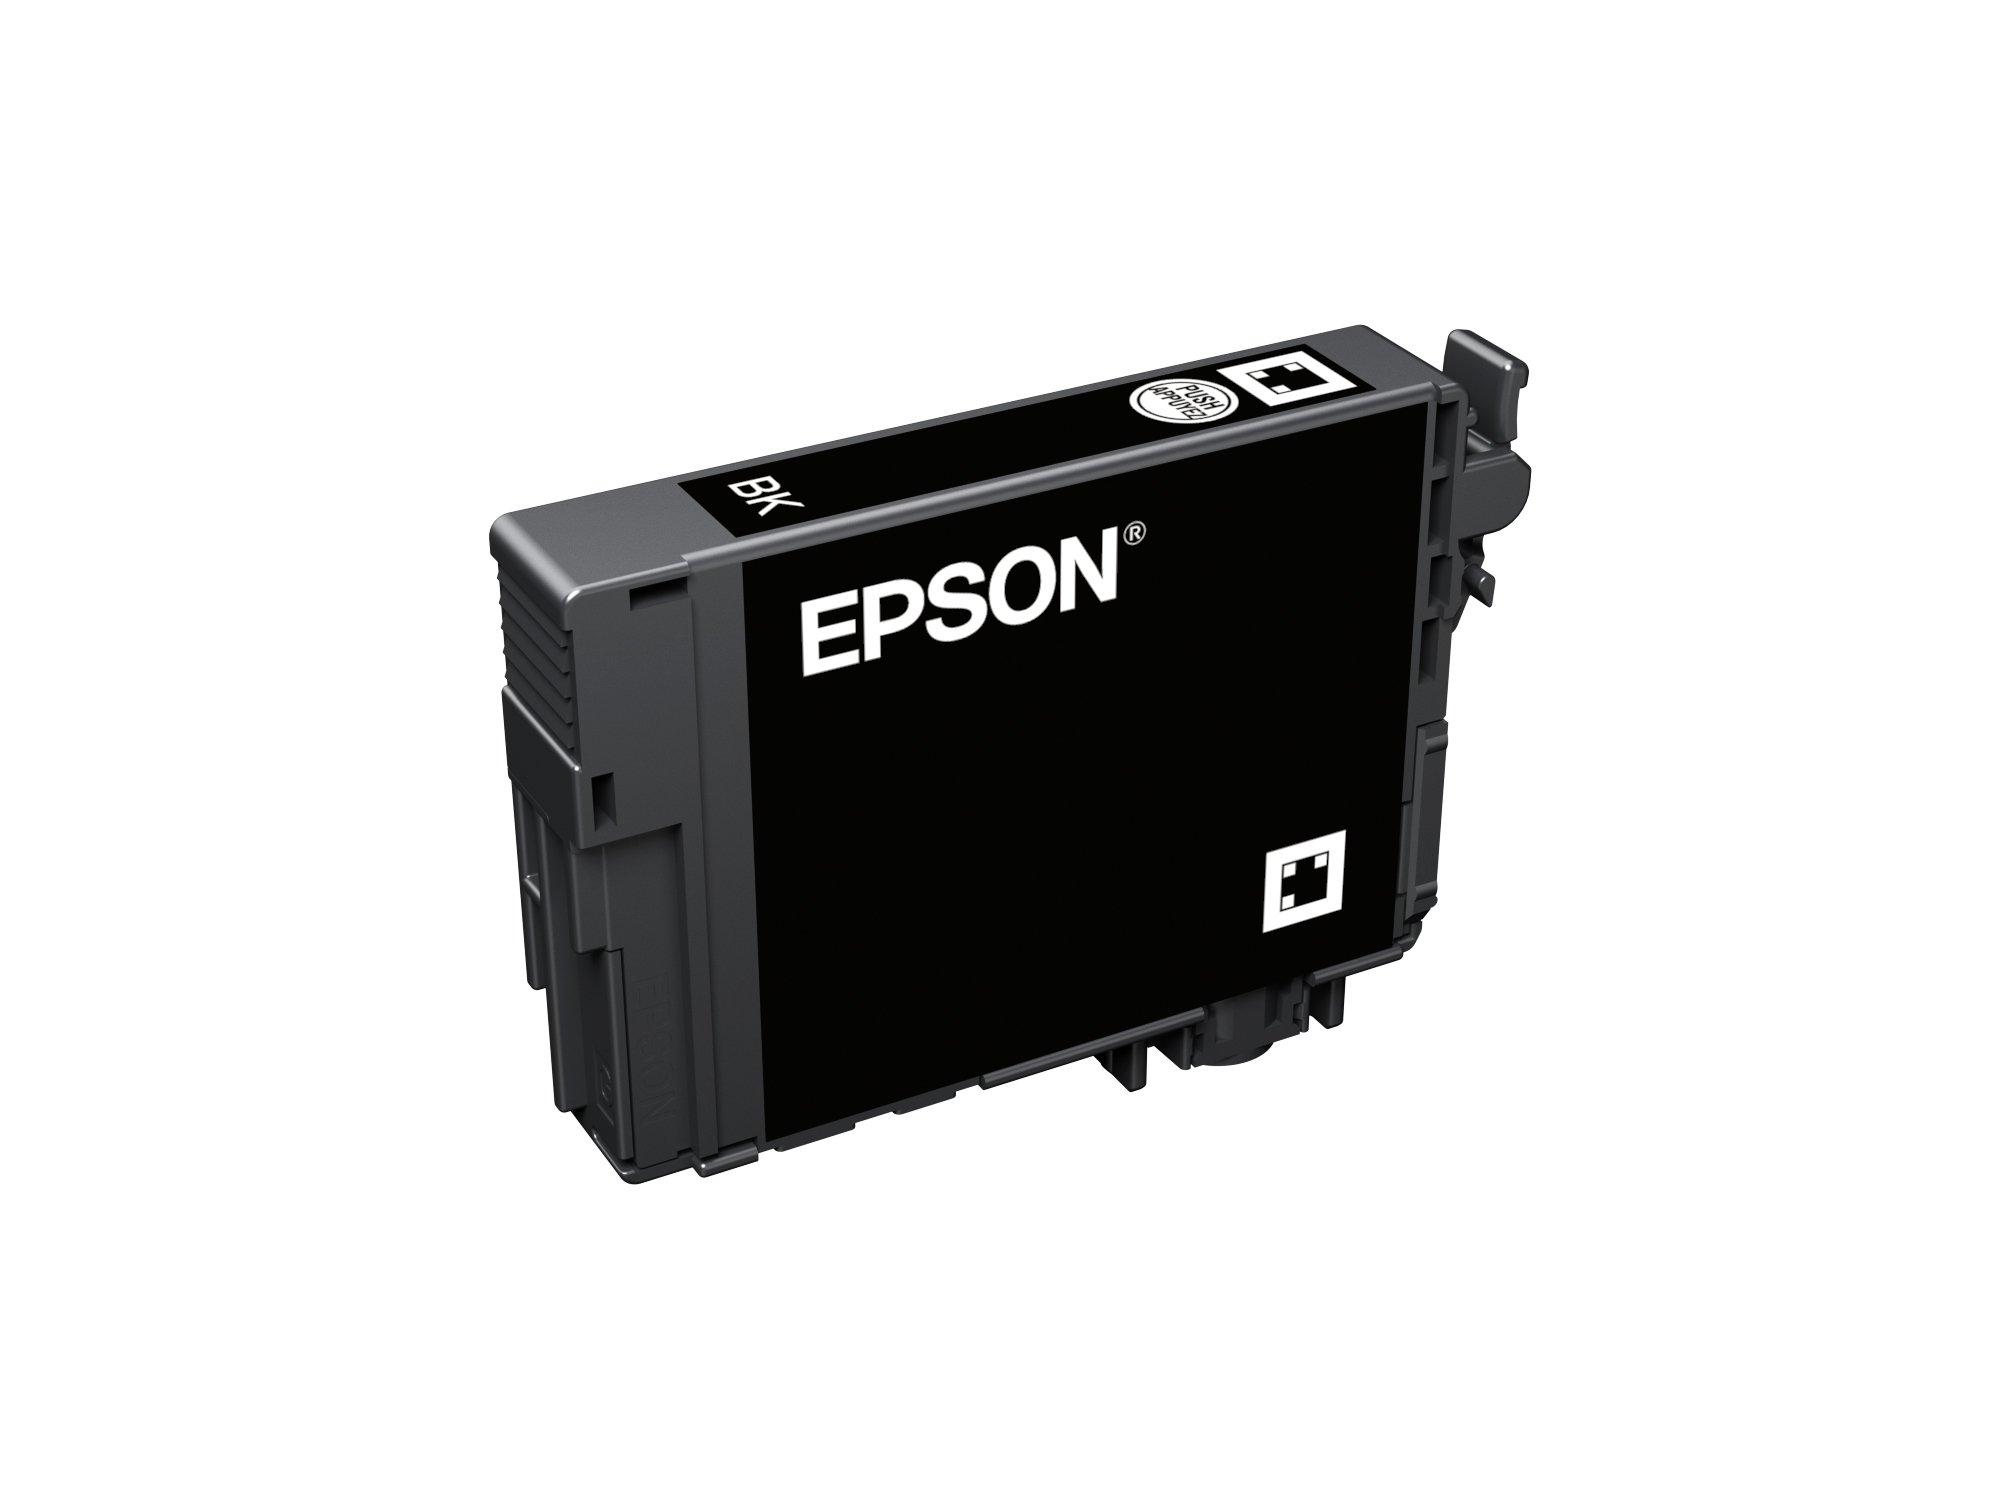 EPSON  Epson 502, Cartuccia d'inchiostro nero 